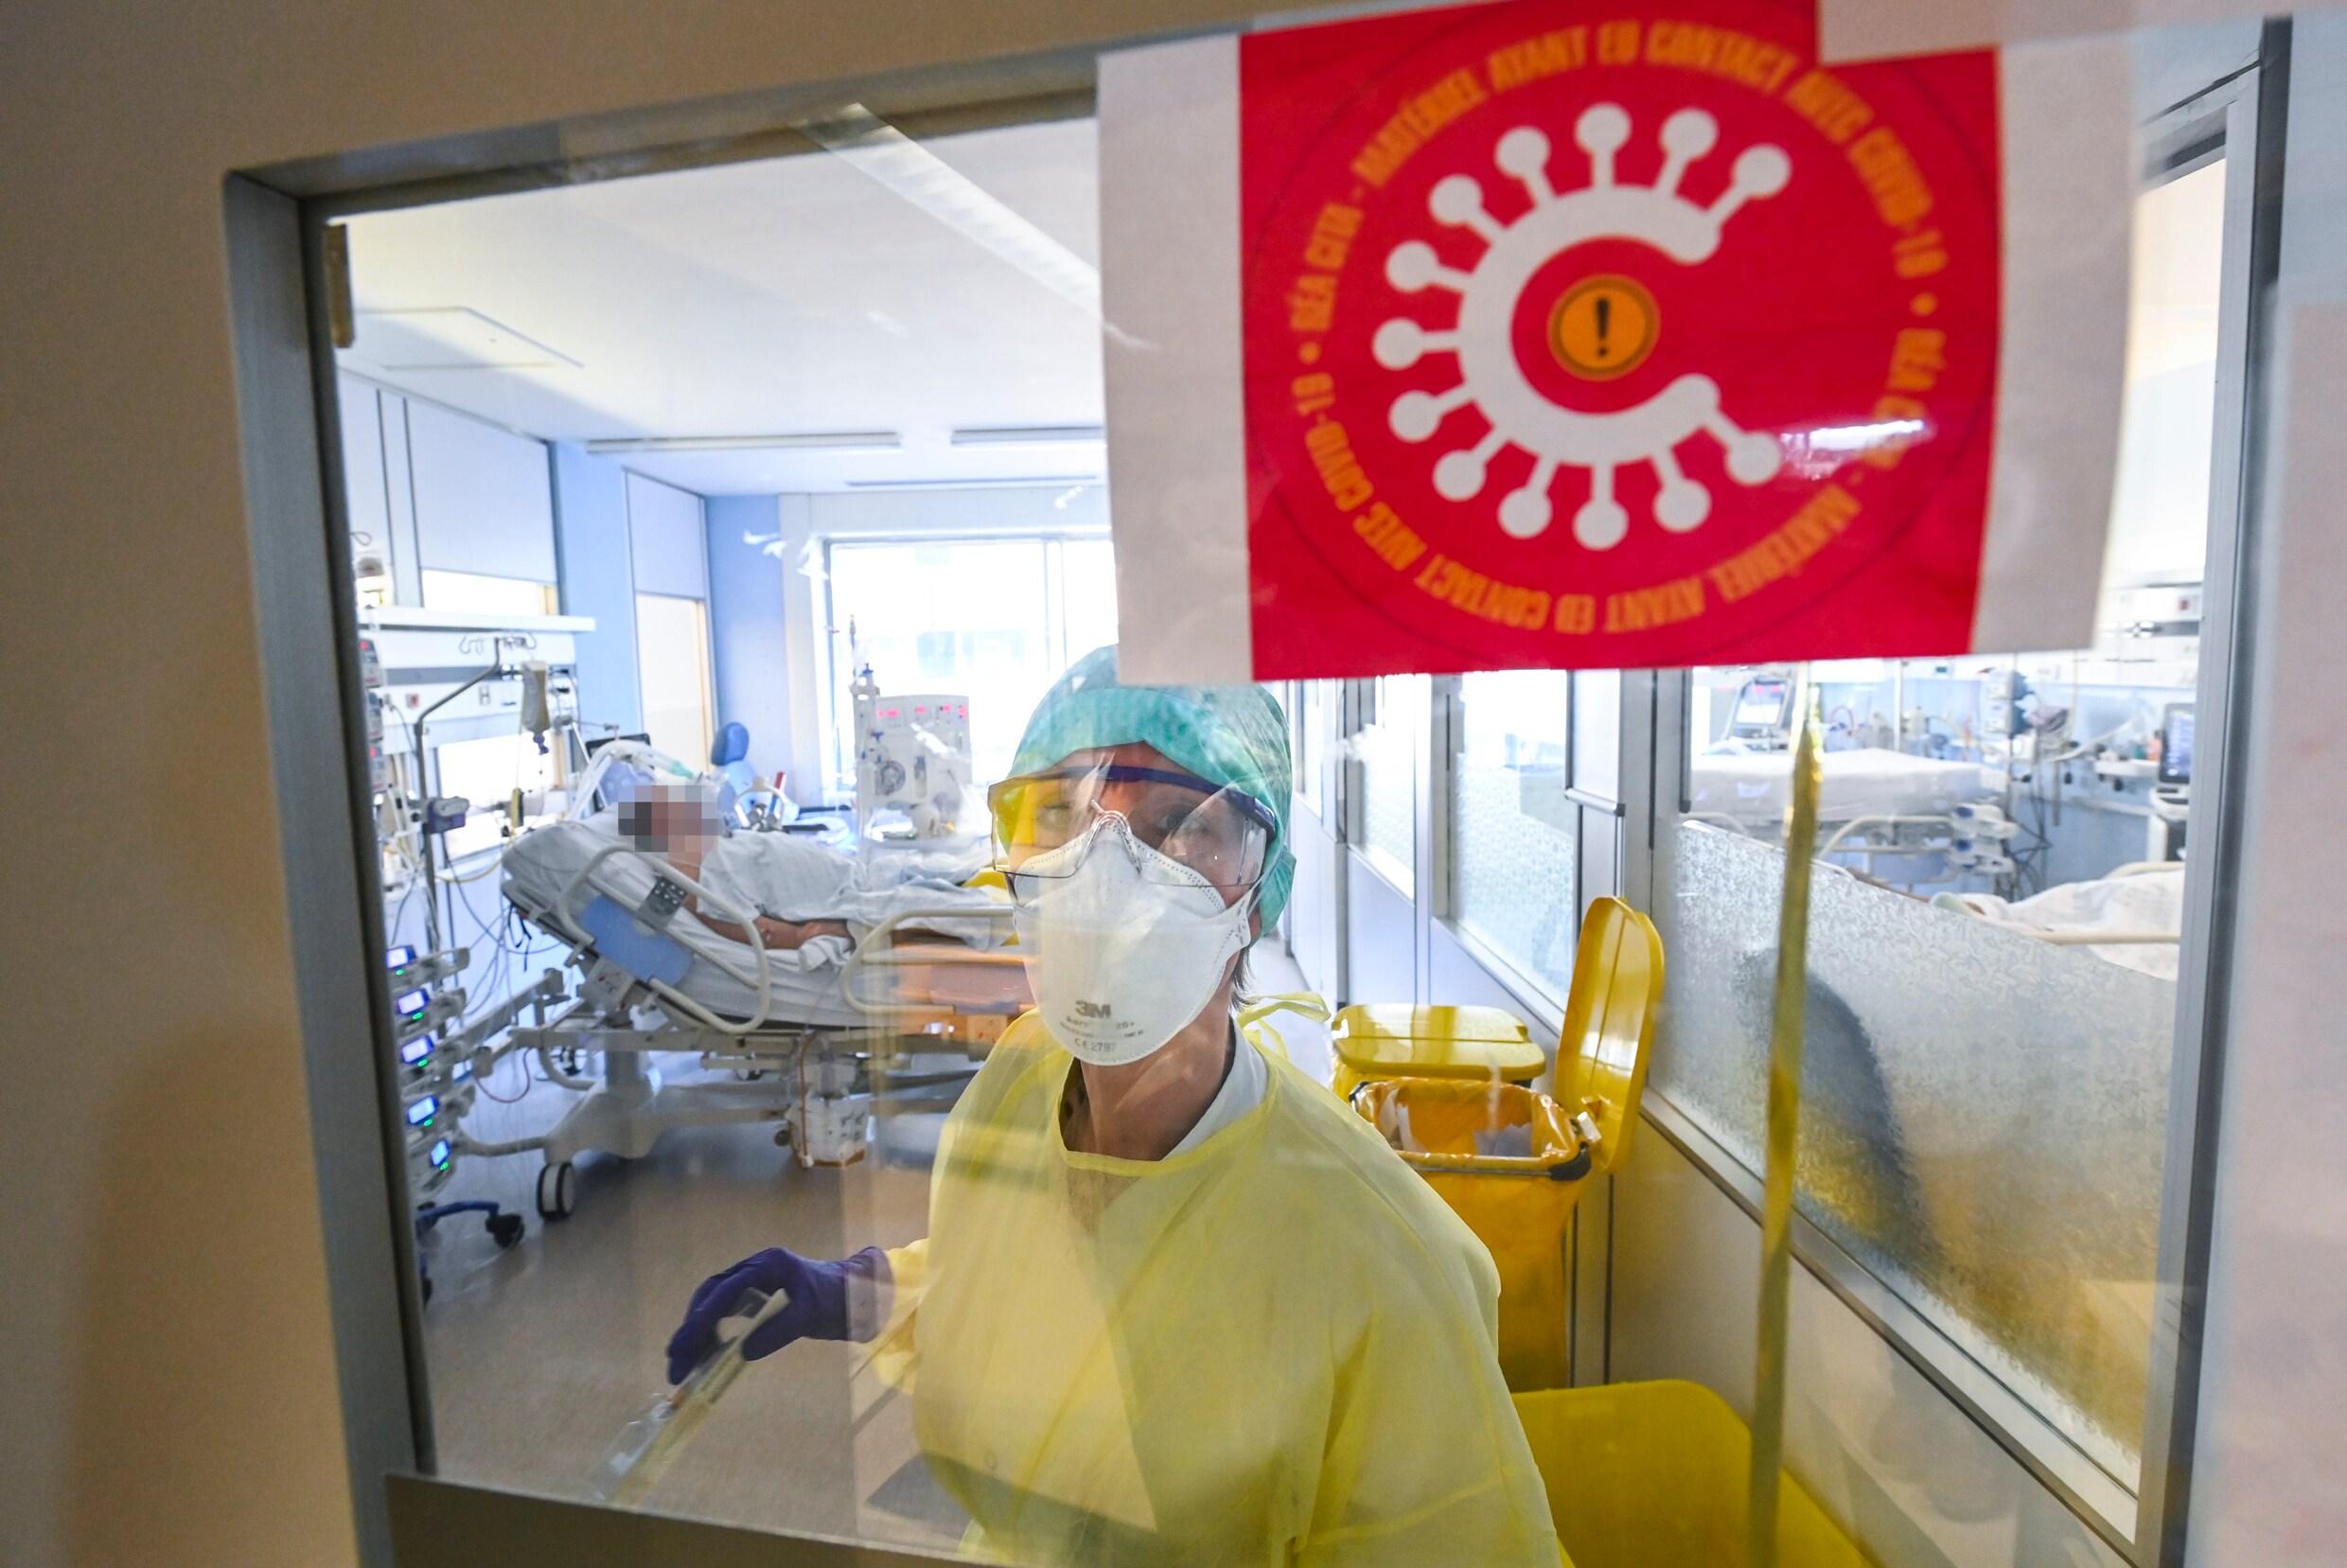 Coronacijfers blijven verder stijgen: gemiddeld 60 nieuwe ziekenhuisopnames per dag